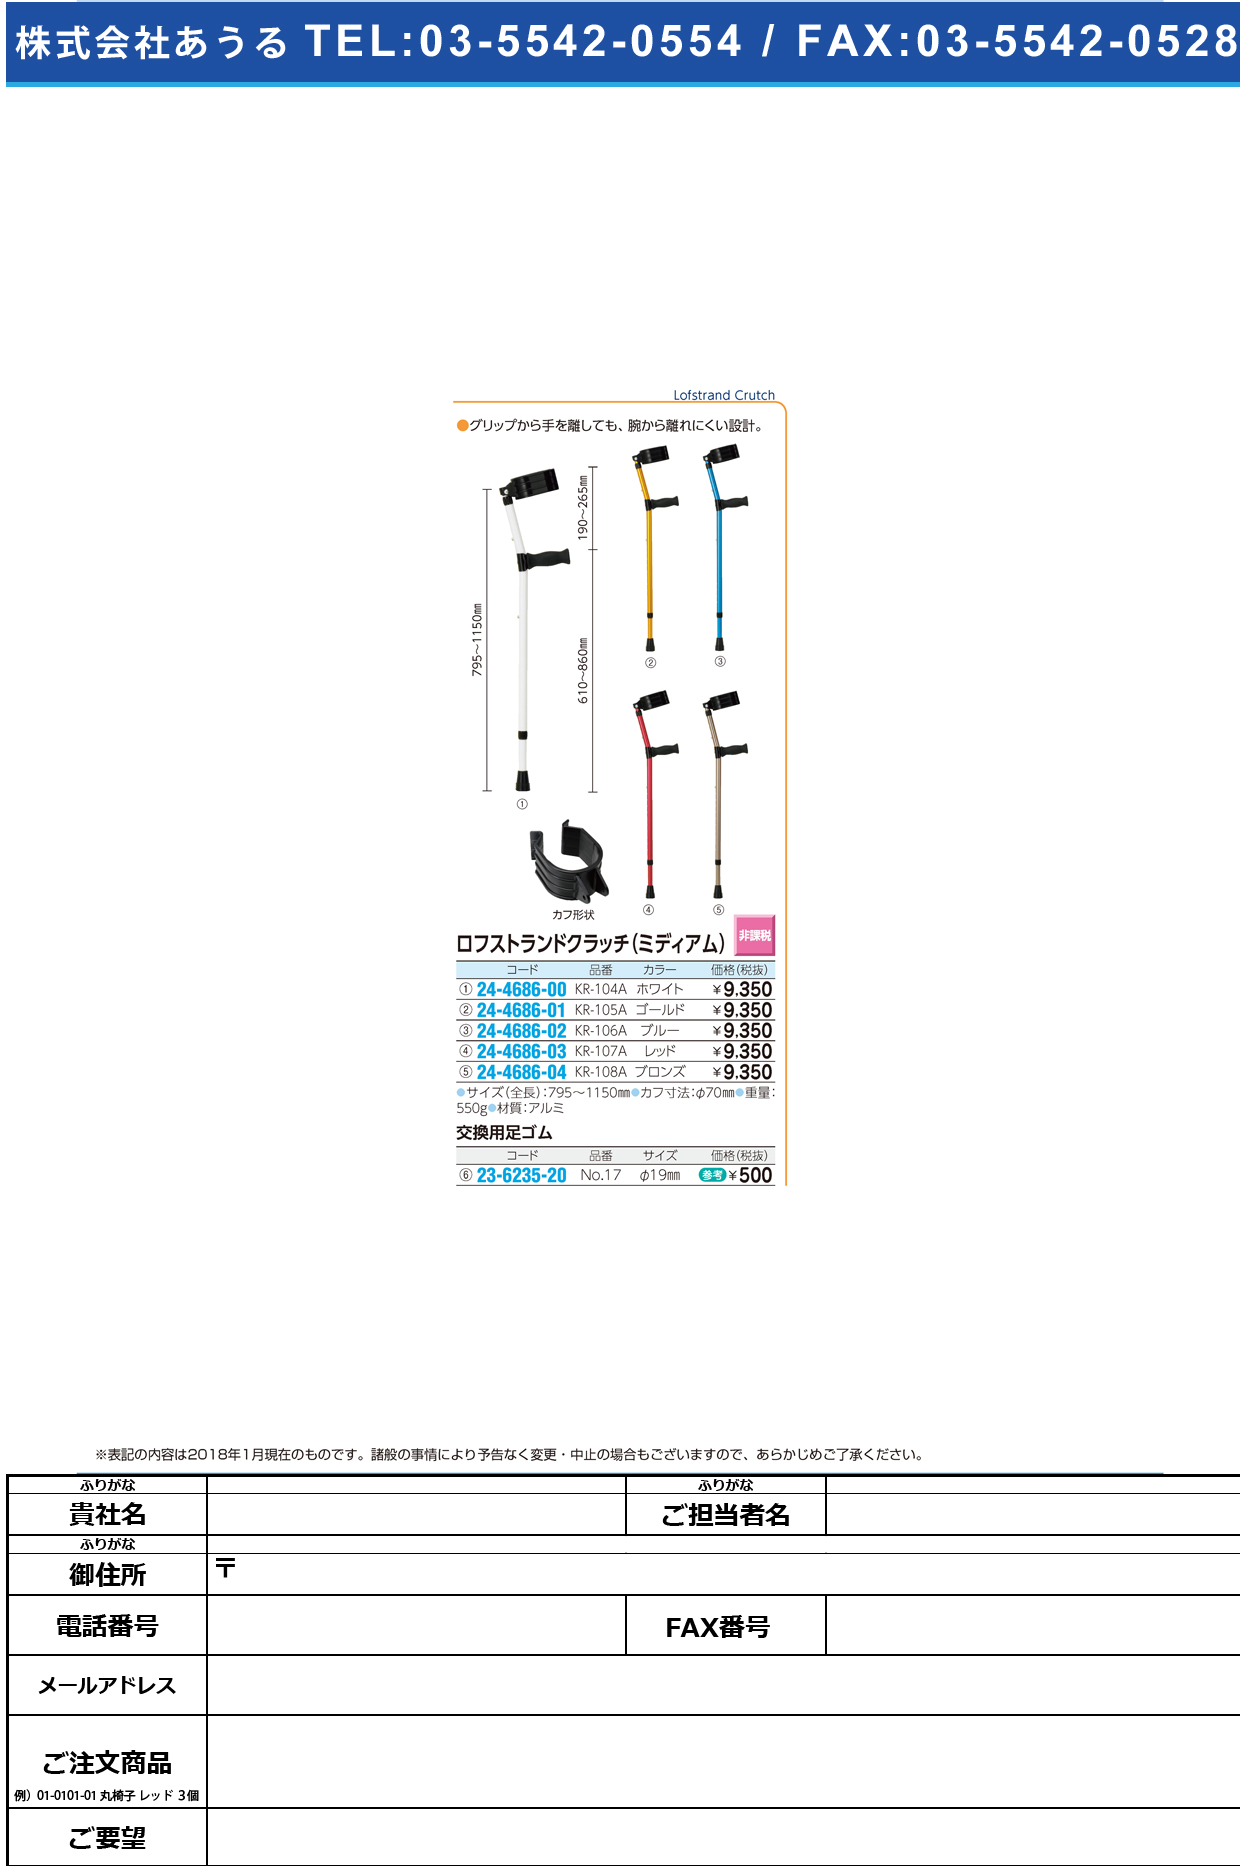 (24-4686-00)ロフストランドクラッチ（ミディアム） KR-104A(ﾎﾜｲﾄ) ﾛﾌｽﾄﾗﾝﾄﾞｸﾗｯﾁ【1本単位】【2018年カタログ商品】